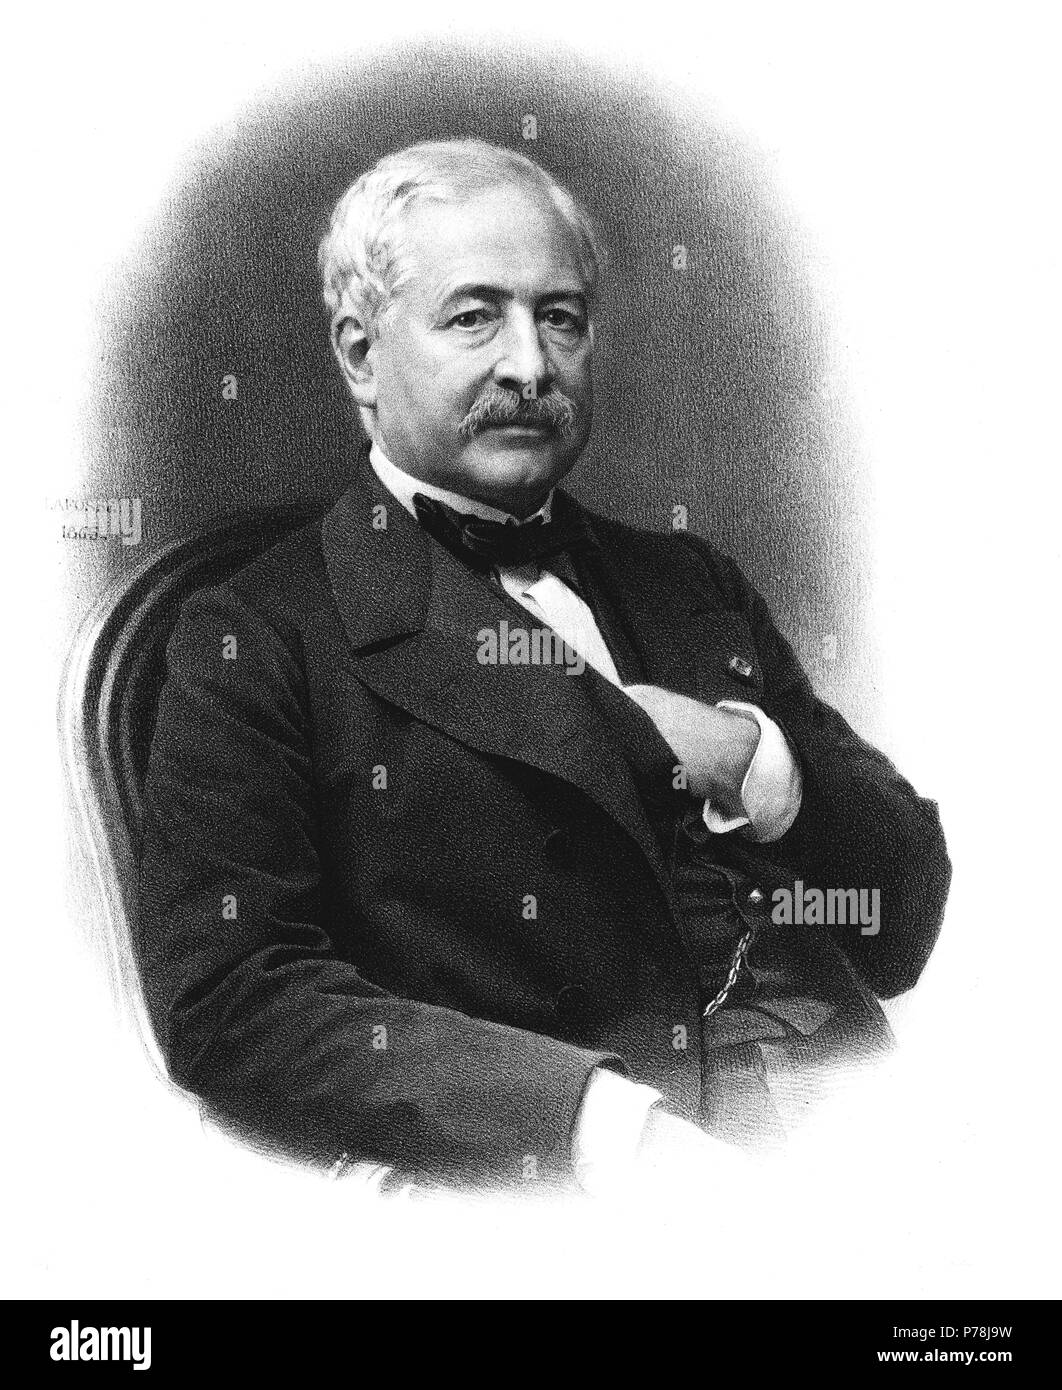 Lesseps, Ferdinando de (1805-1894), diplomático y administrador francés. Impulsor del Canal de Suez. Grabado de 1865. Foto Stock